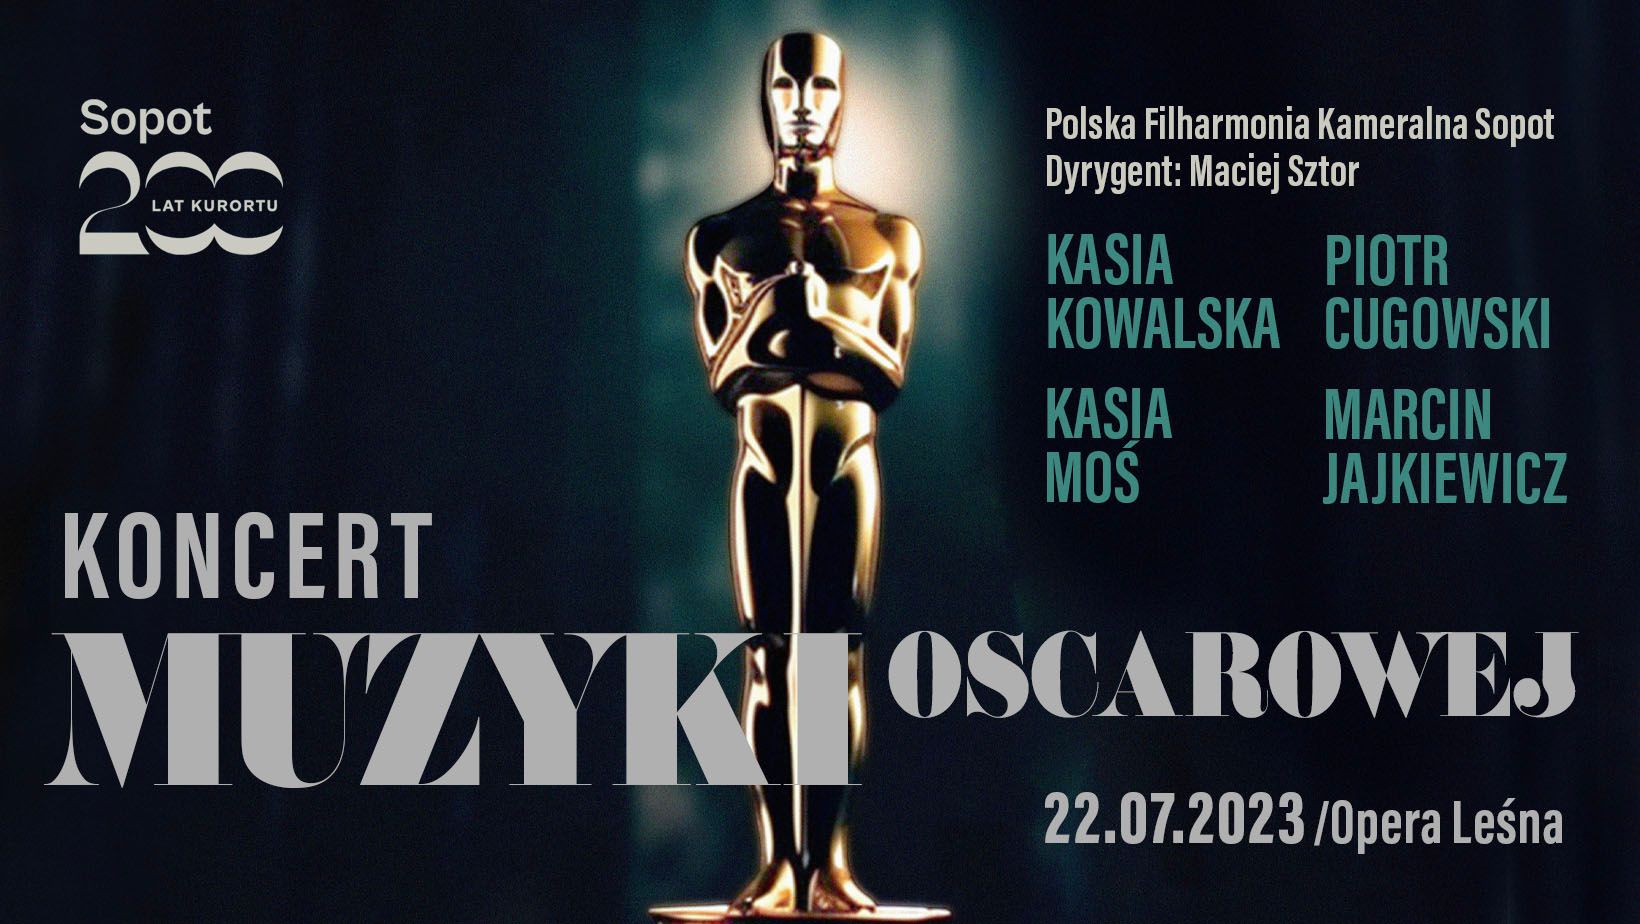 Koncert Muzyki Oscarowej w sopockiej Operze Leśnej